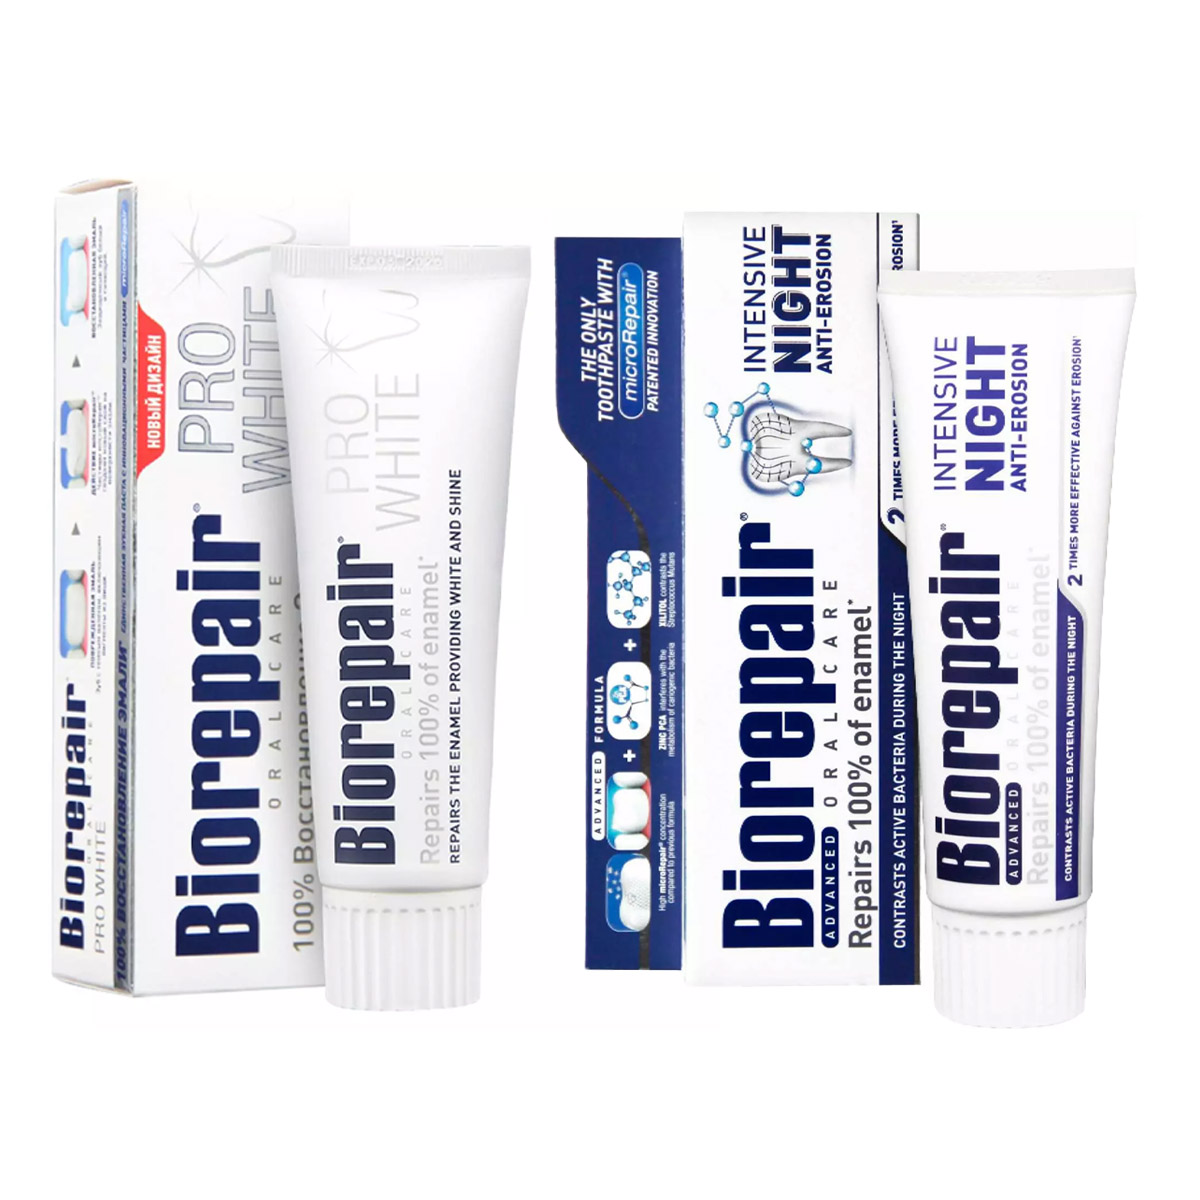 Biorepair Набор зубных паст для сохранения белизны, 2х75 мл (Biorepair, Отбеливание и лечение) biorepair набор зубных паст для всех членов семьи 2х75 мл biorepair отбеливание и лечение